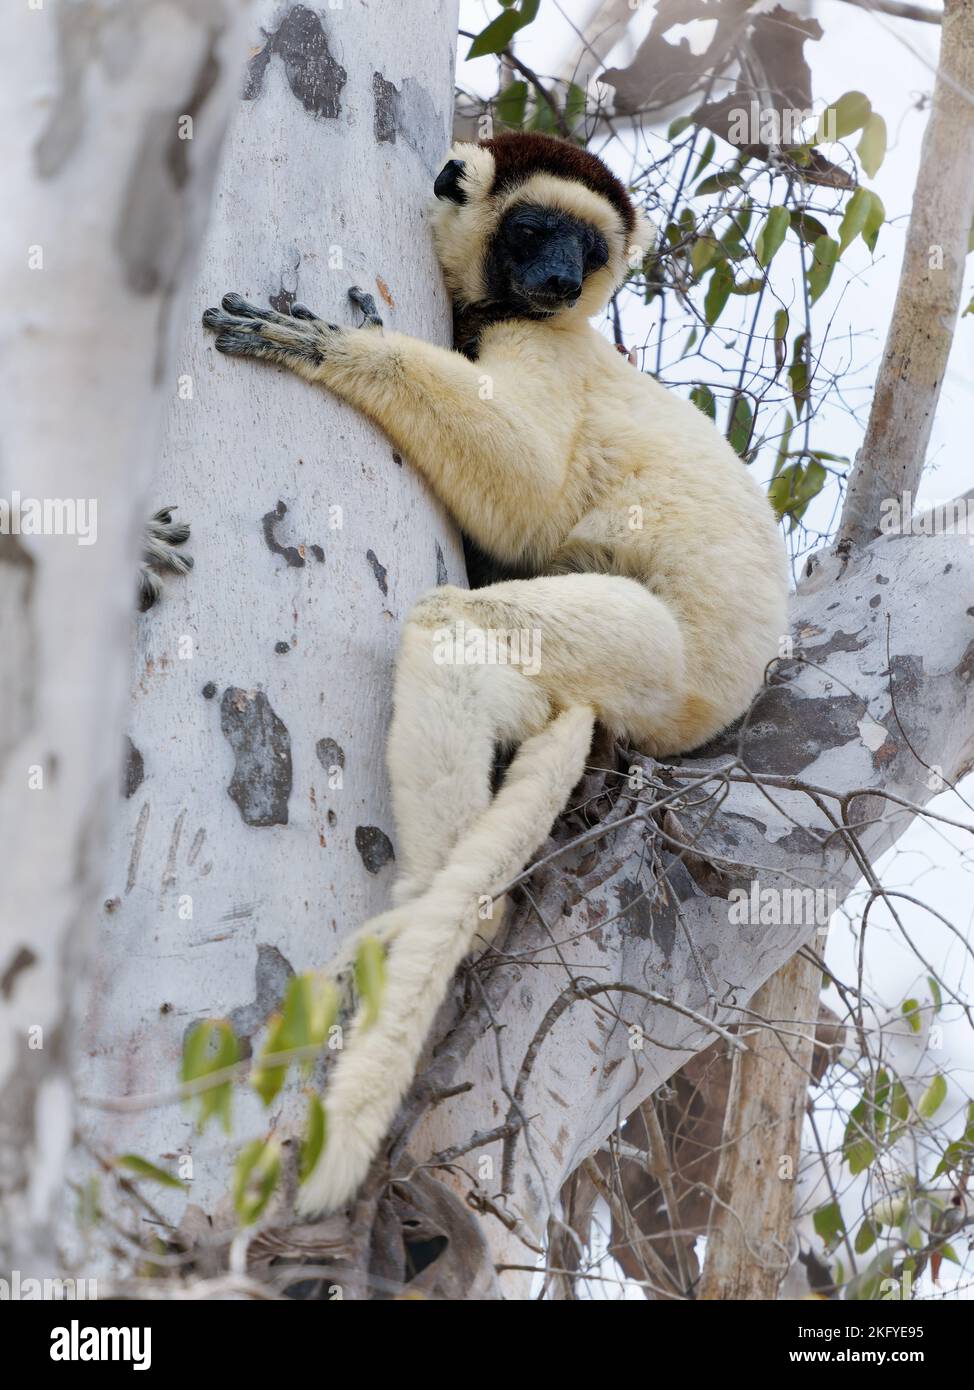 Verreauxs Sifaka - Propithecus verreauxi o Sifaka Blanca, primate en los Indriidae, vive de la selva tropical a los bosques secos caducifolios del oeste de Madagascar Foto de stock